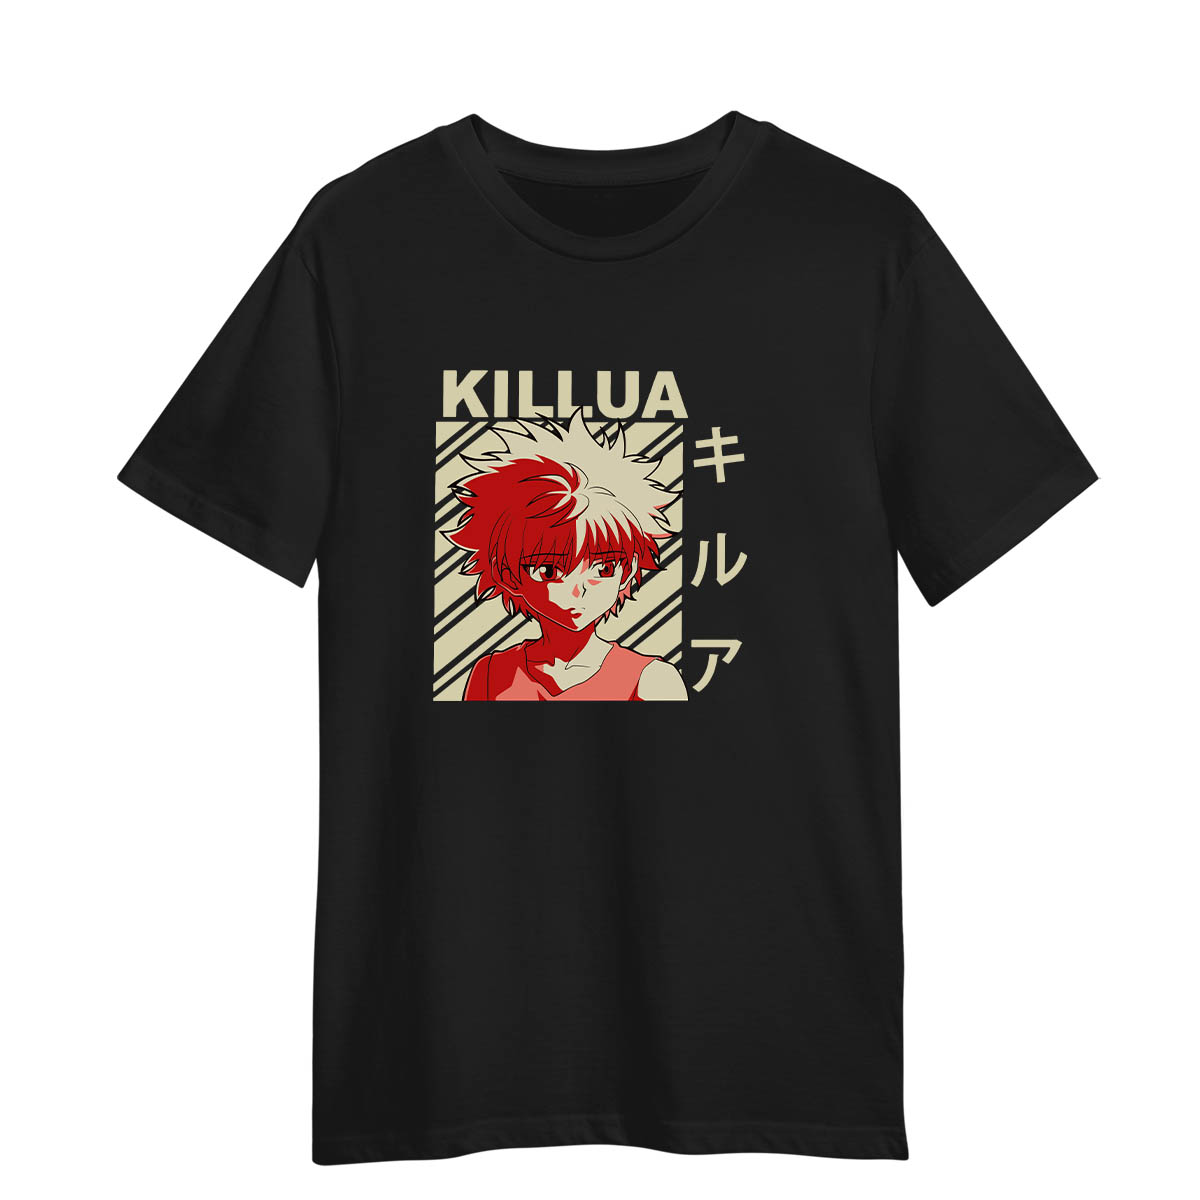 Killua Hunter X Hunter Japanese Anime Adult Unisex Black T-shirt